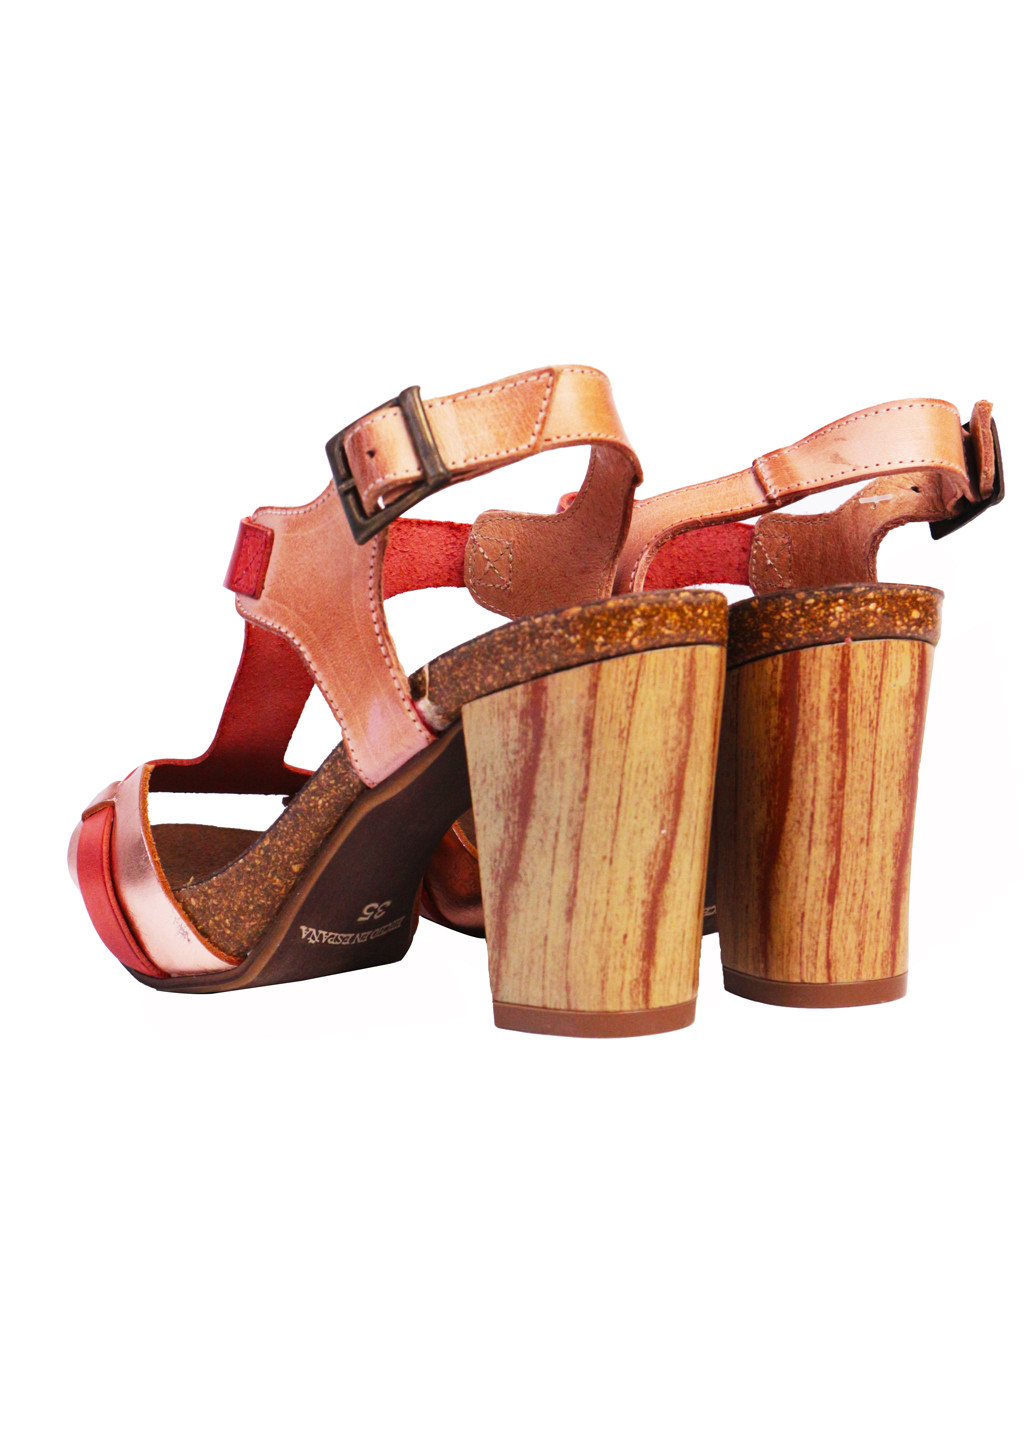 Комбинированные босоножки летние женские натуральная кожа на широком каблуке 36 кораллово-бронзовые a&d Lidl